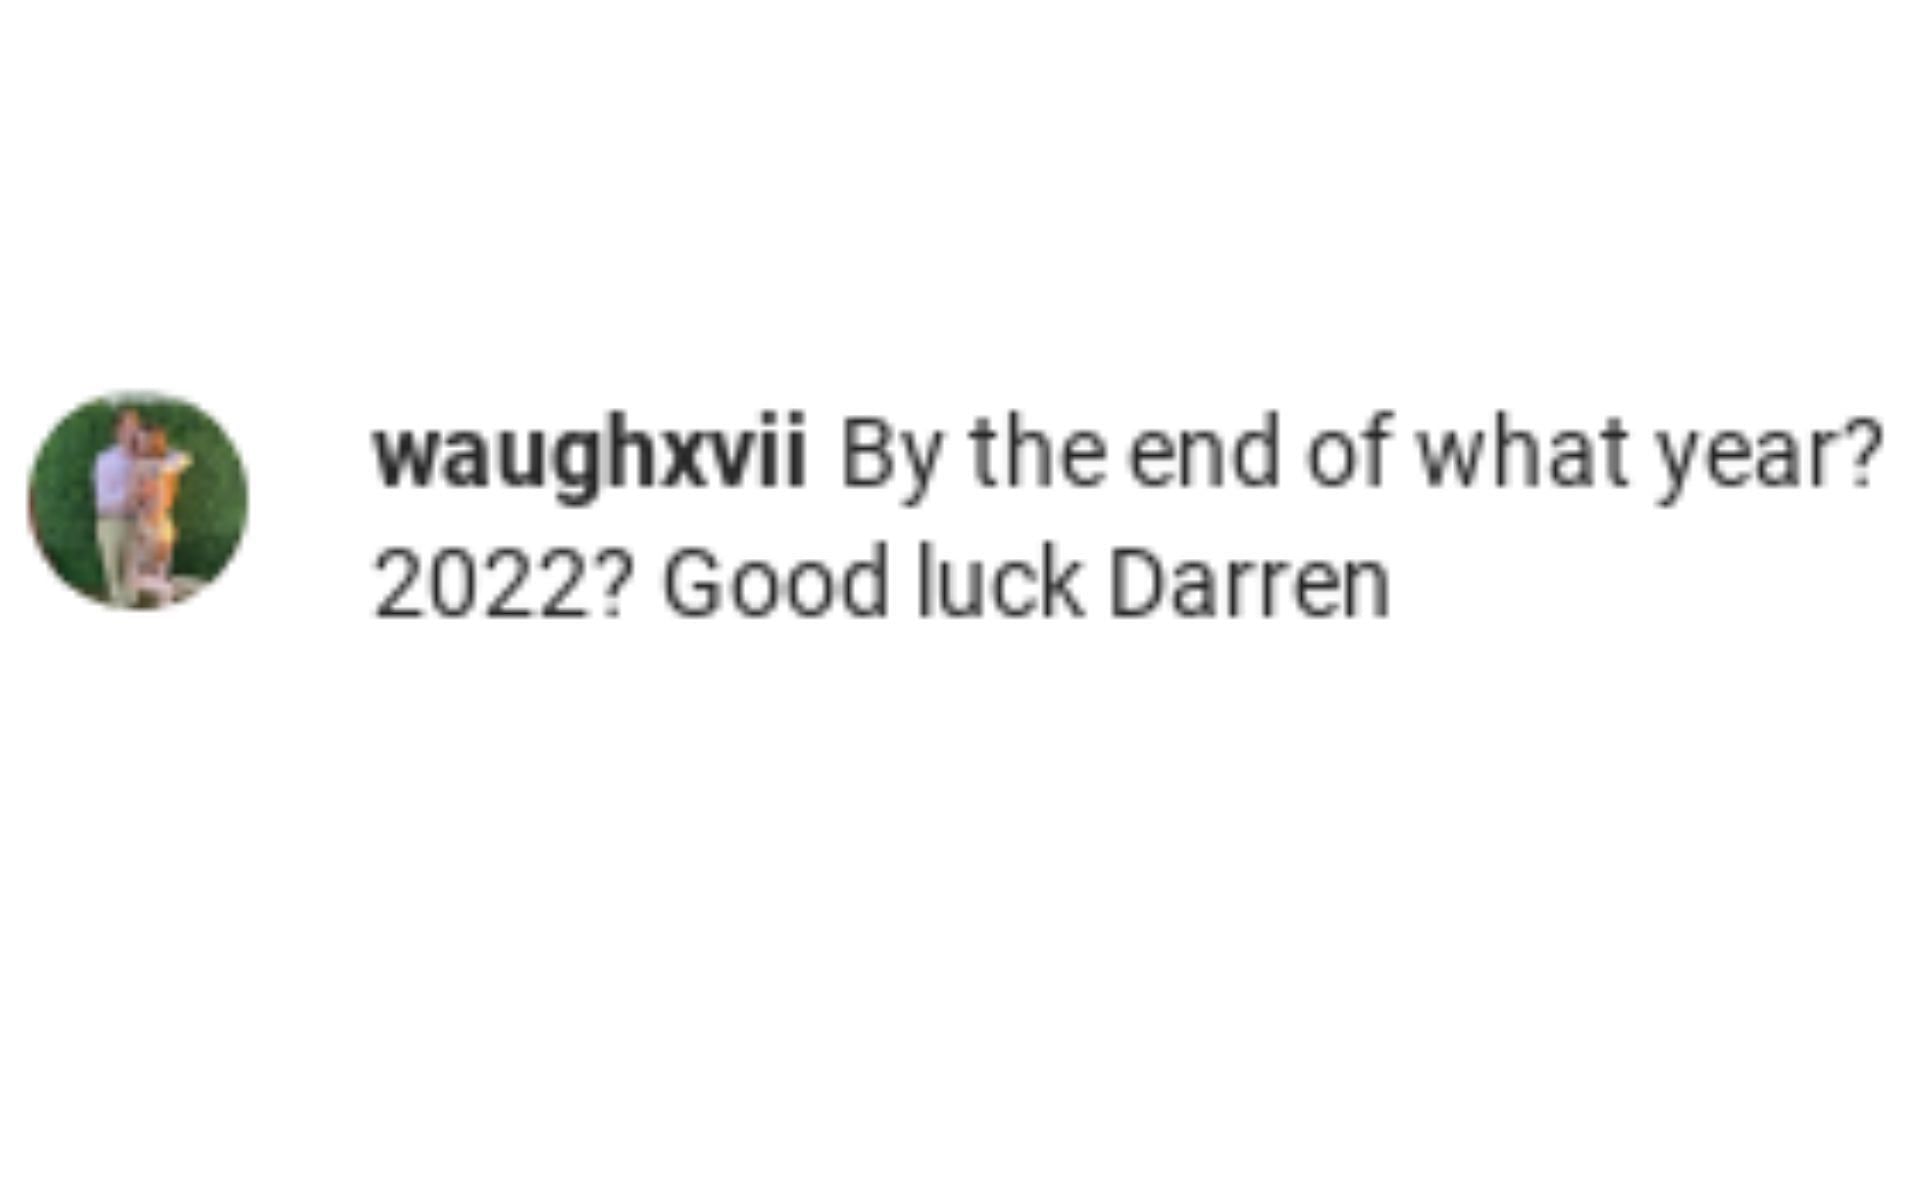 One fan asking if Darren Till meant 2022